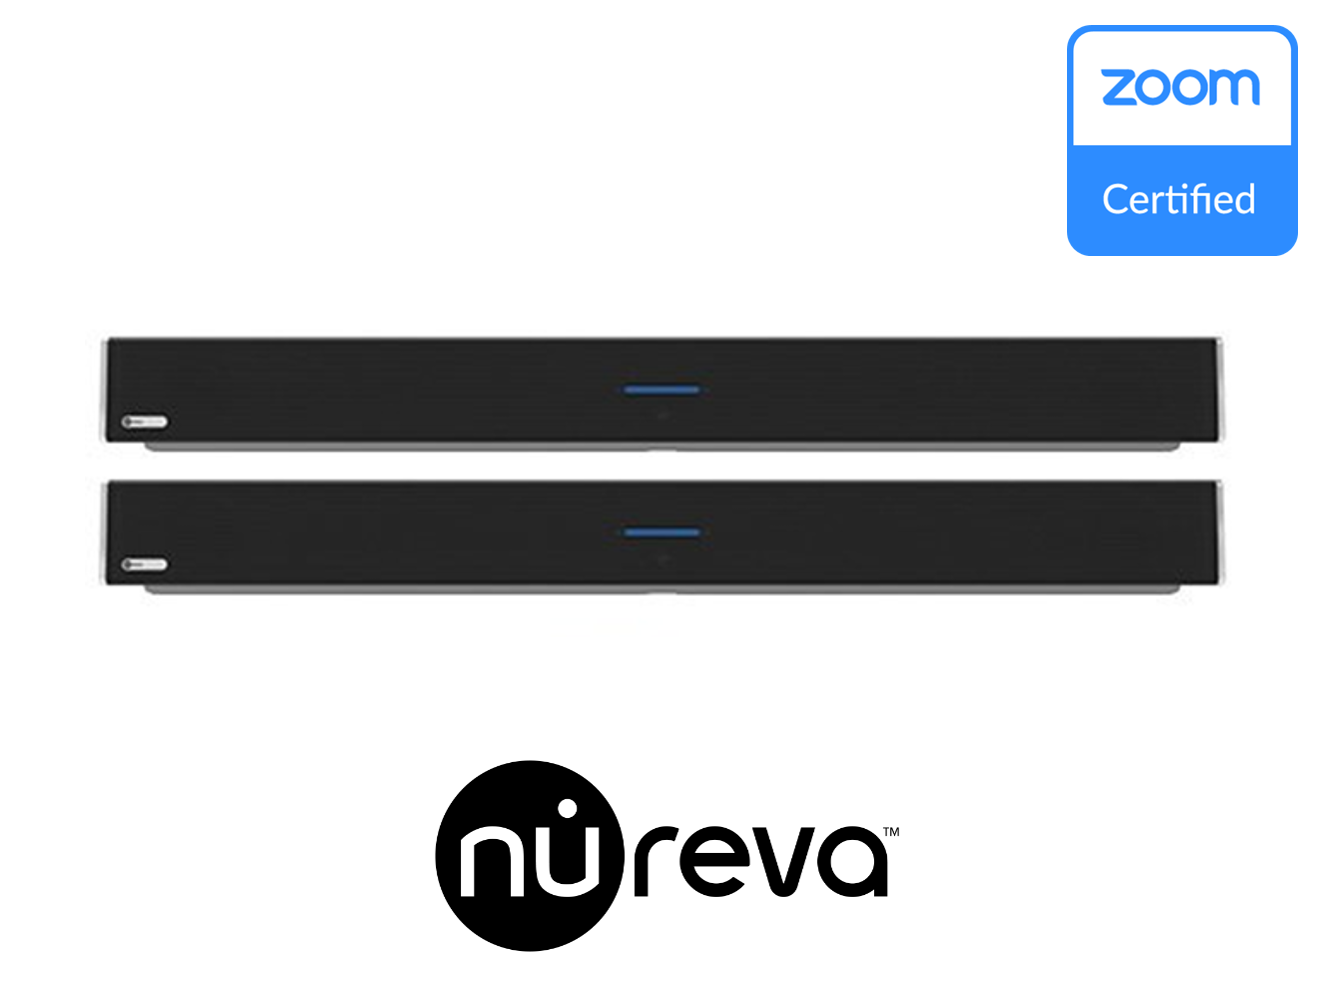 Nureva Dual HDL300 Zoom Rooms Certified